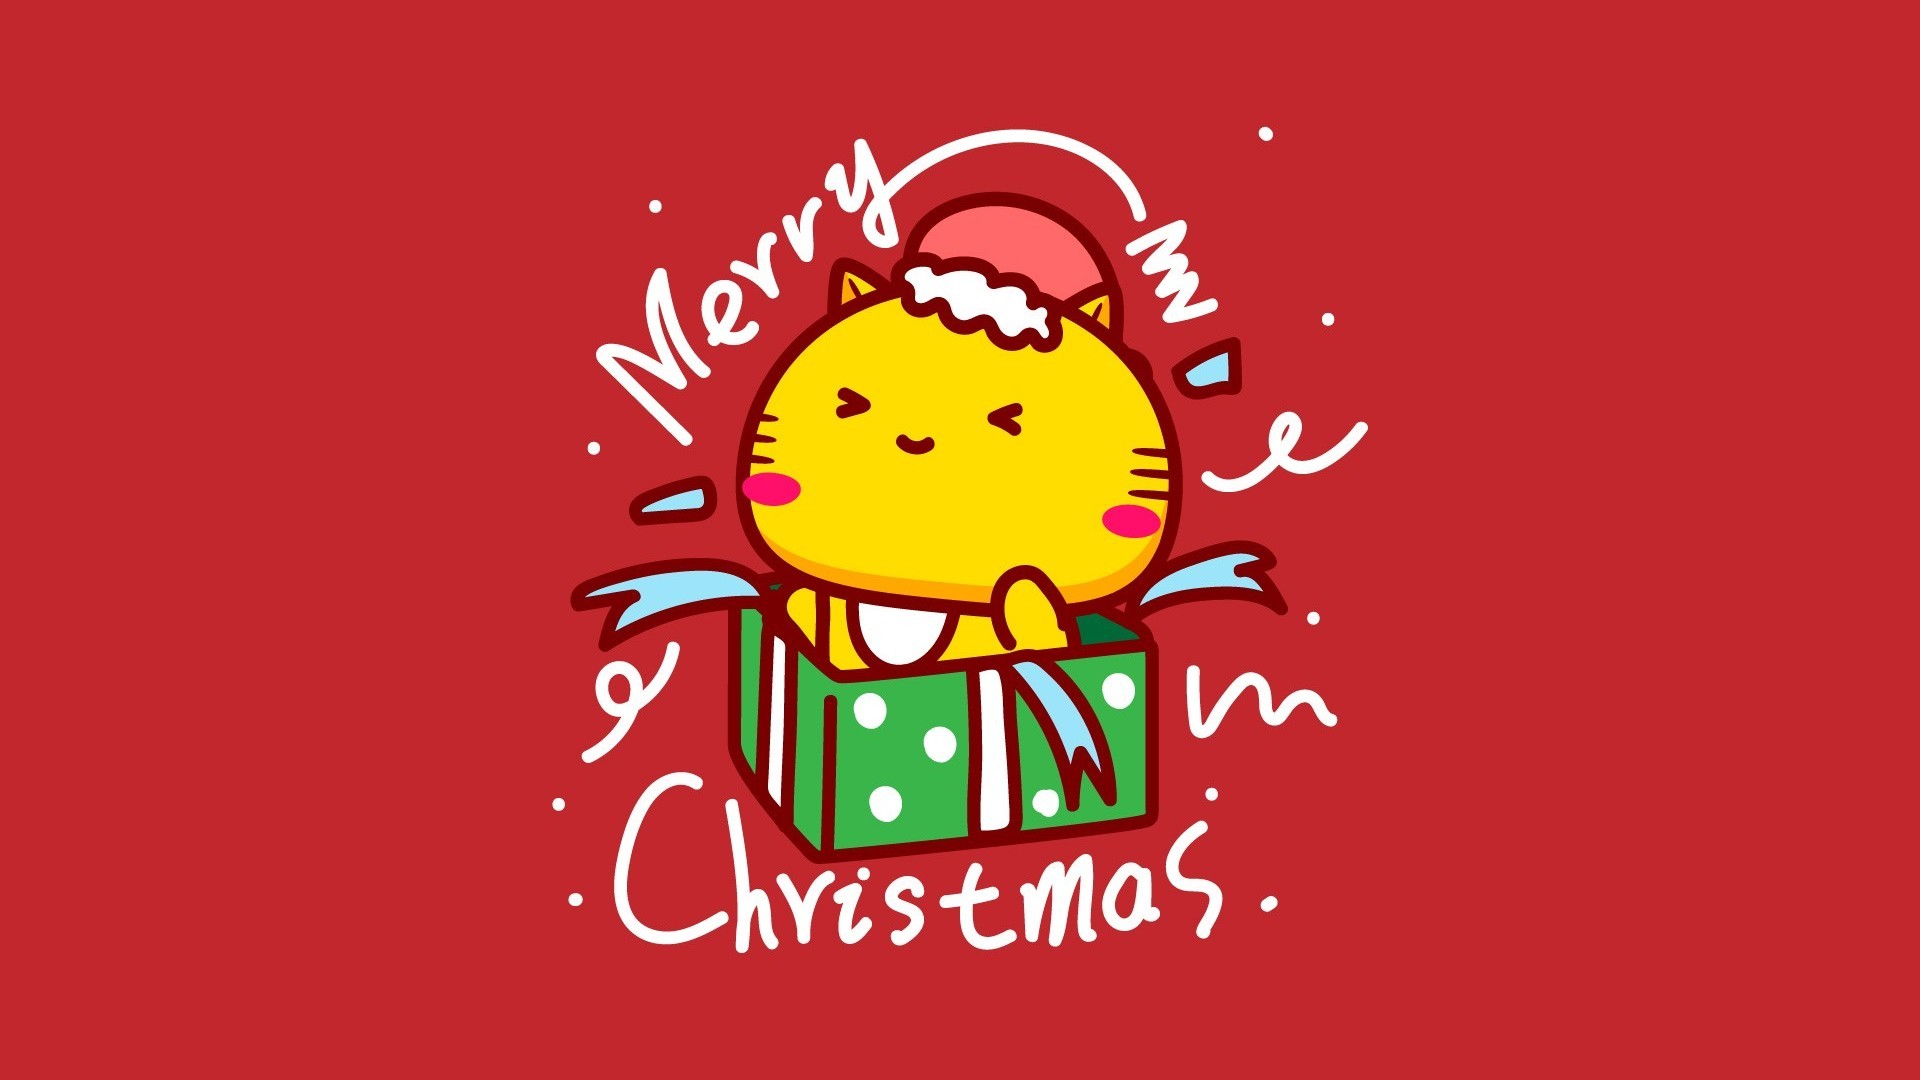 哈咪猫简约背景雪花飘飘圣诞节卡通大图